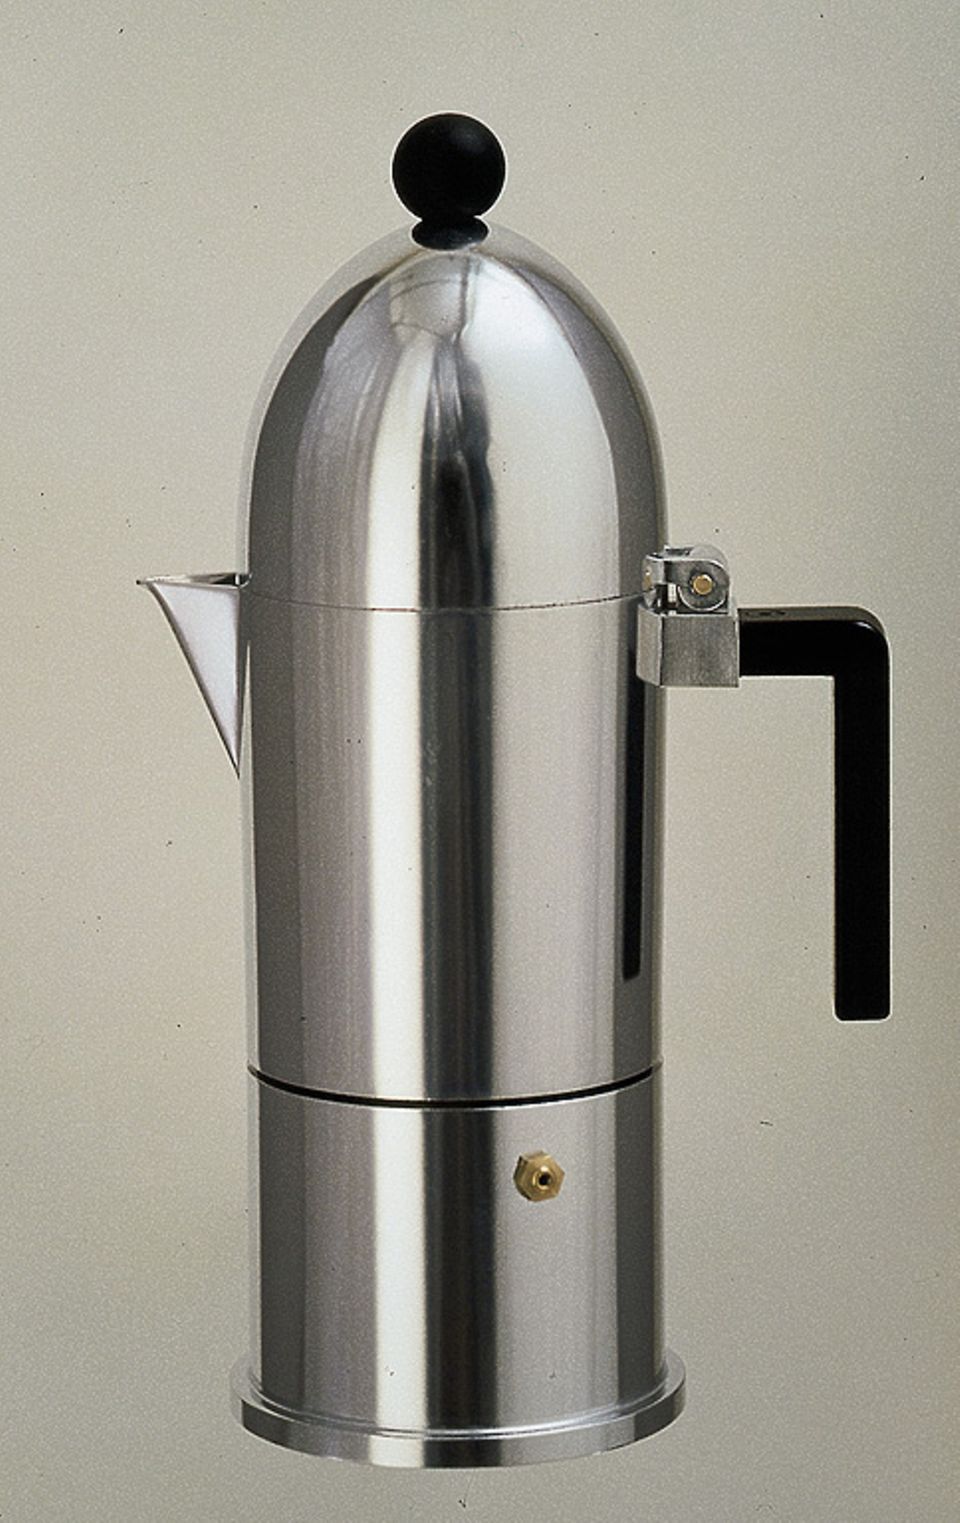 Kannen-Architektur: Espressokocher "La Cupola" von Aldo Rossi